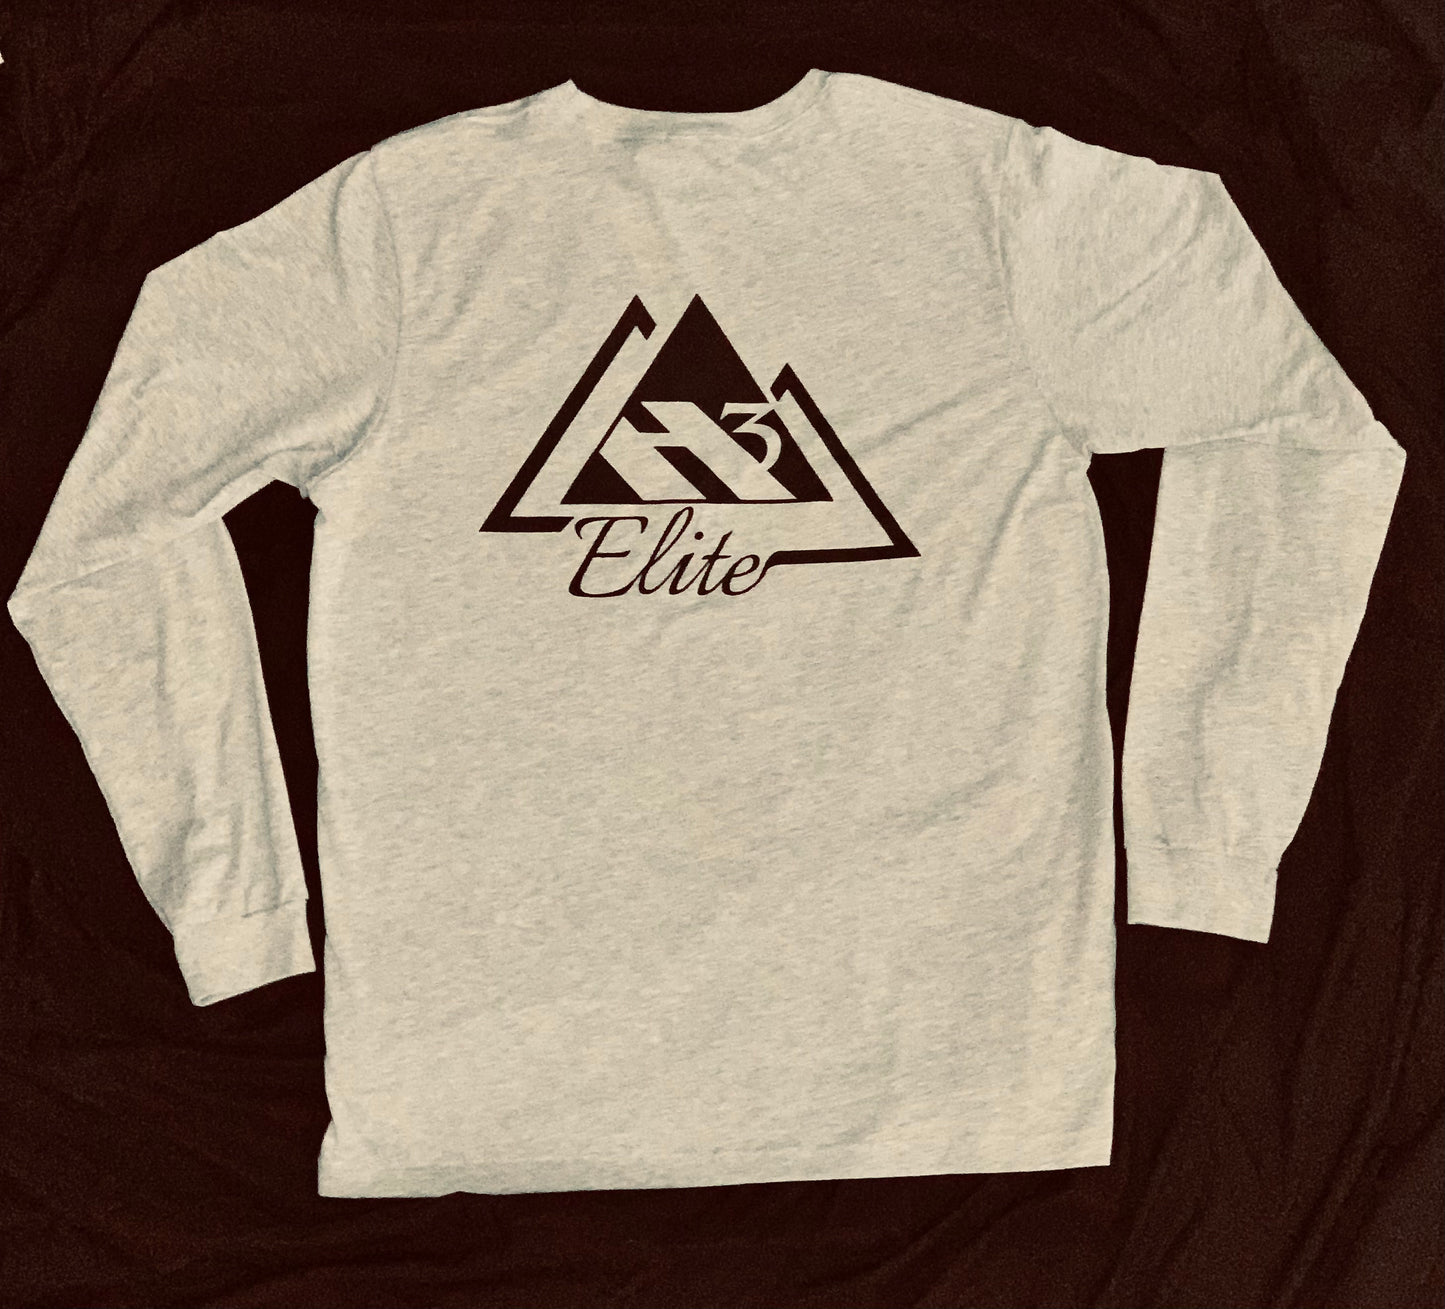 Athletic Heather "Elite Onset" long sleeve t-shirt with white logo (back)